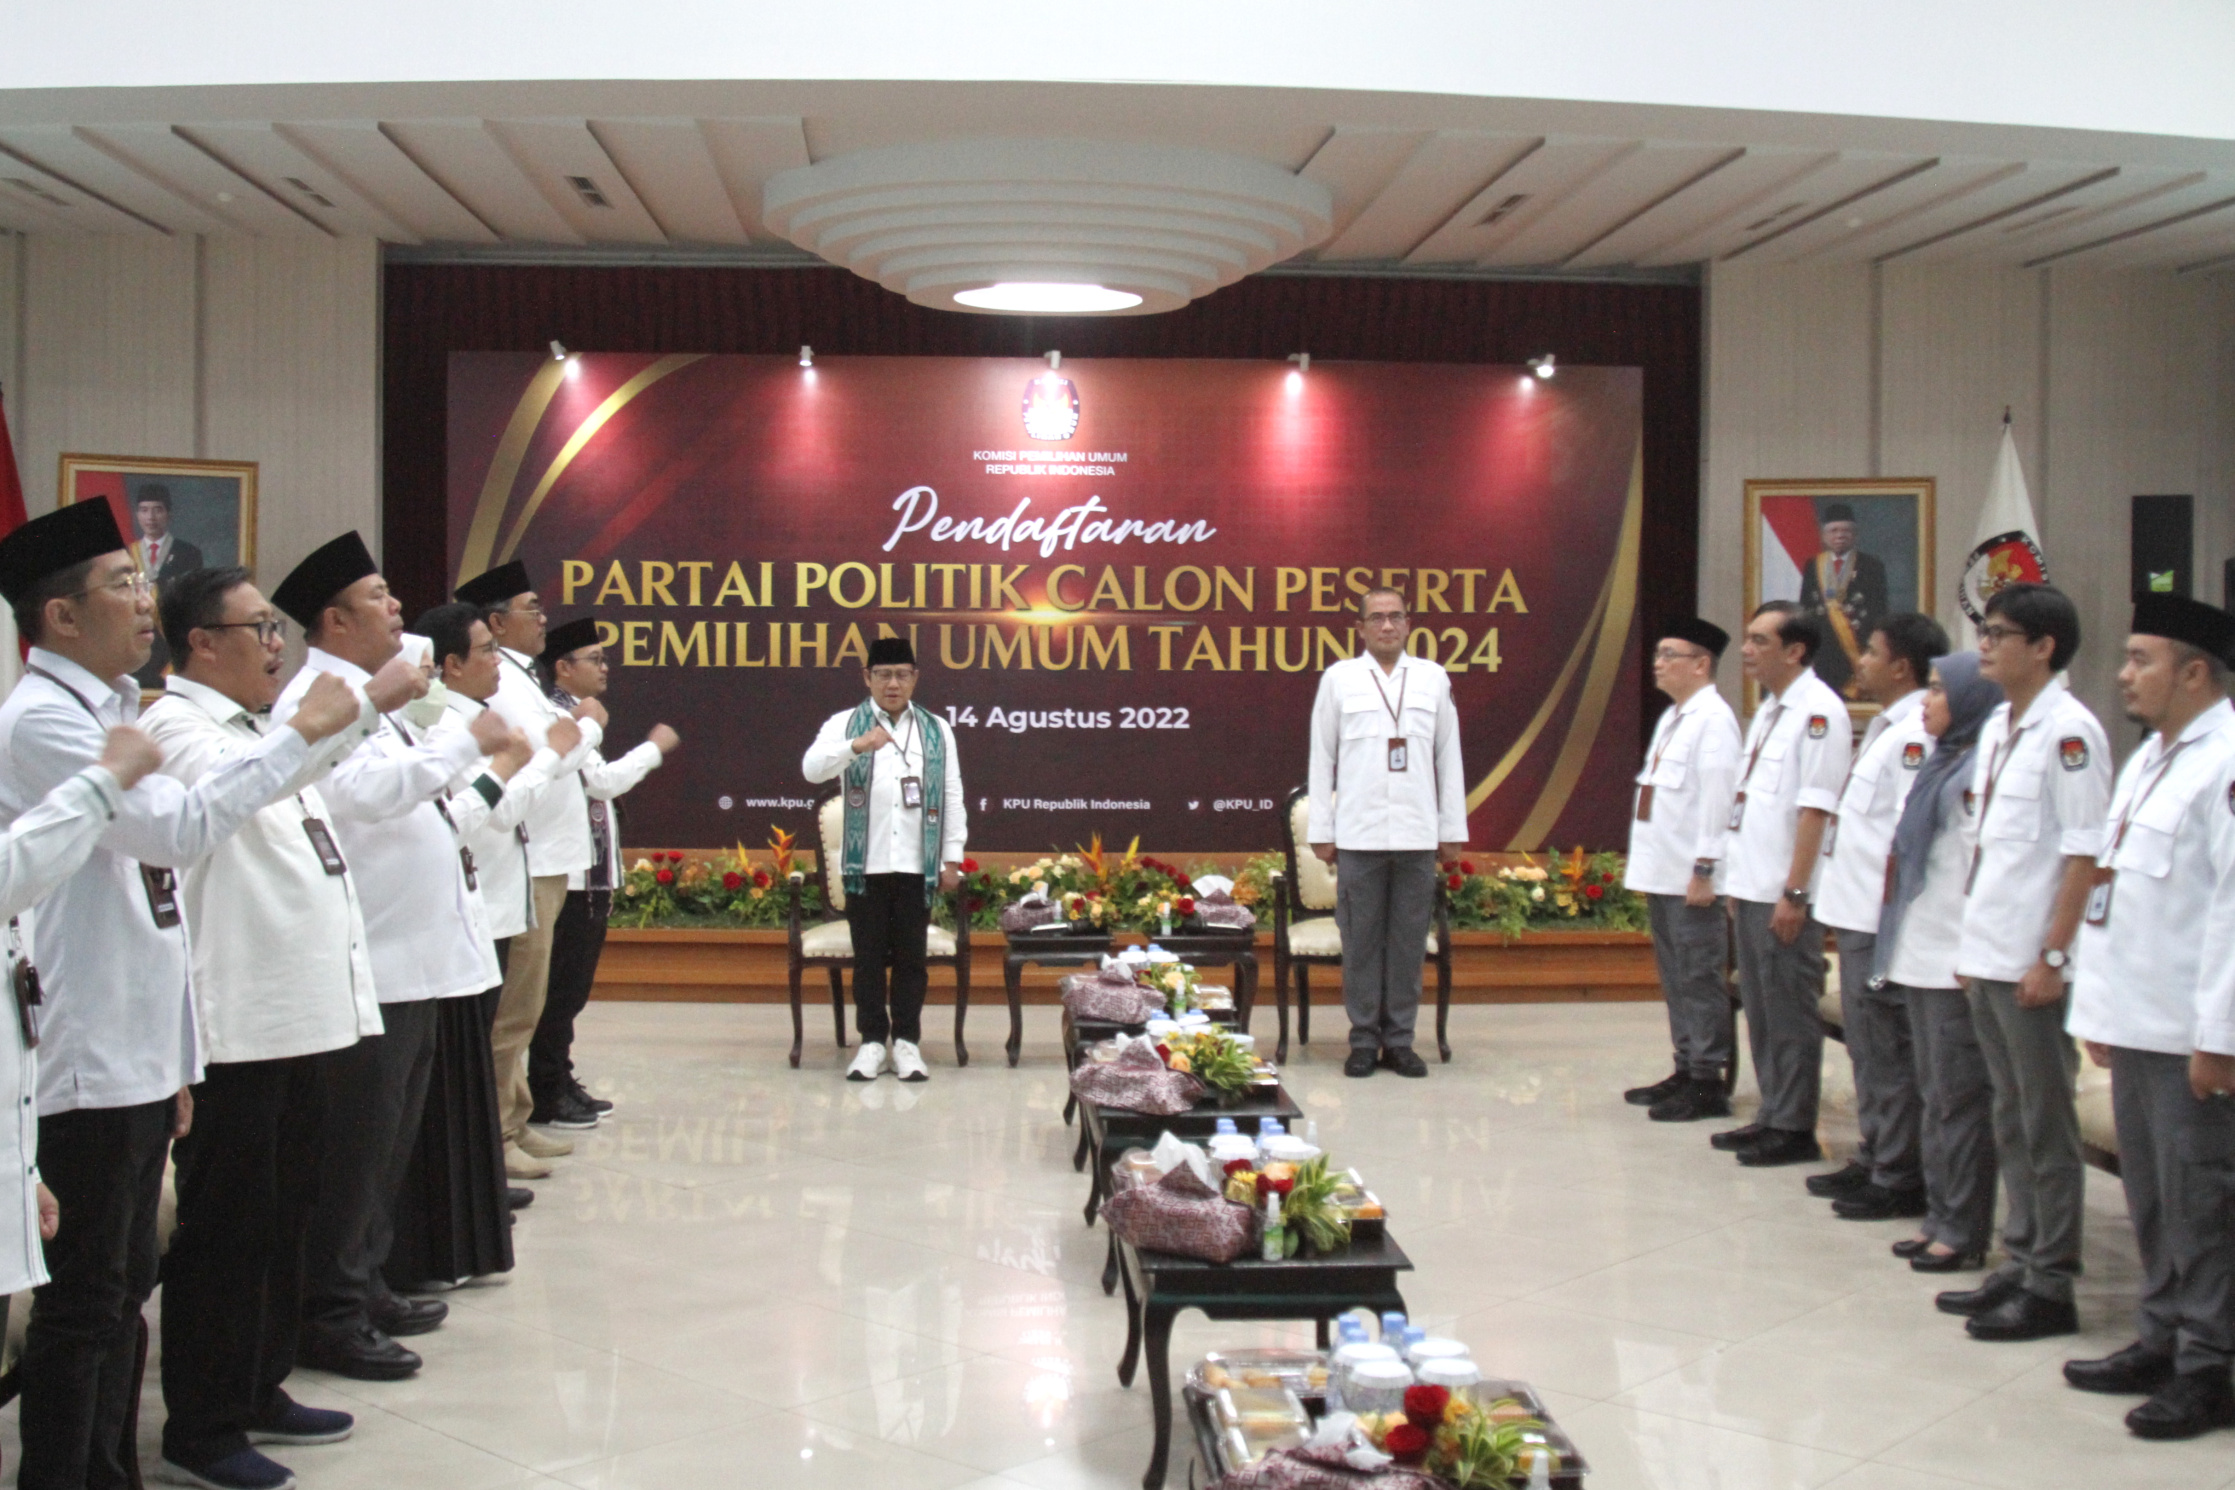 Ketua Umum PKB Muhaimin Iskandar, Ketua Gerindra Prabowo Subianto dan Ketua KPU RI Hasyim Asy'ari (Ashar/SinPo.id)